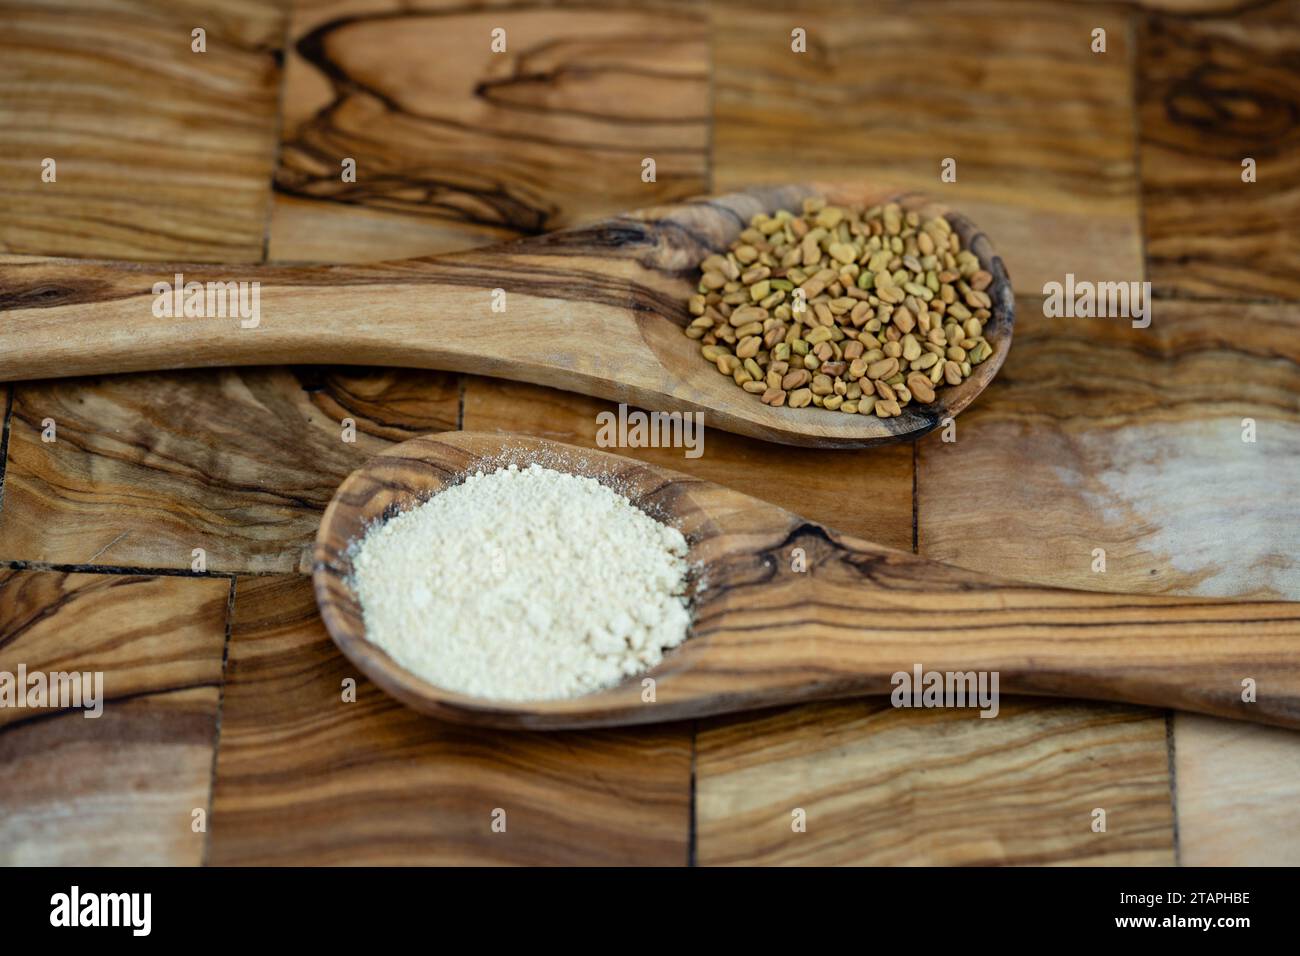 Fenugreek seeds whole or ground on olive wood Stock Photo